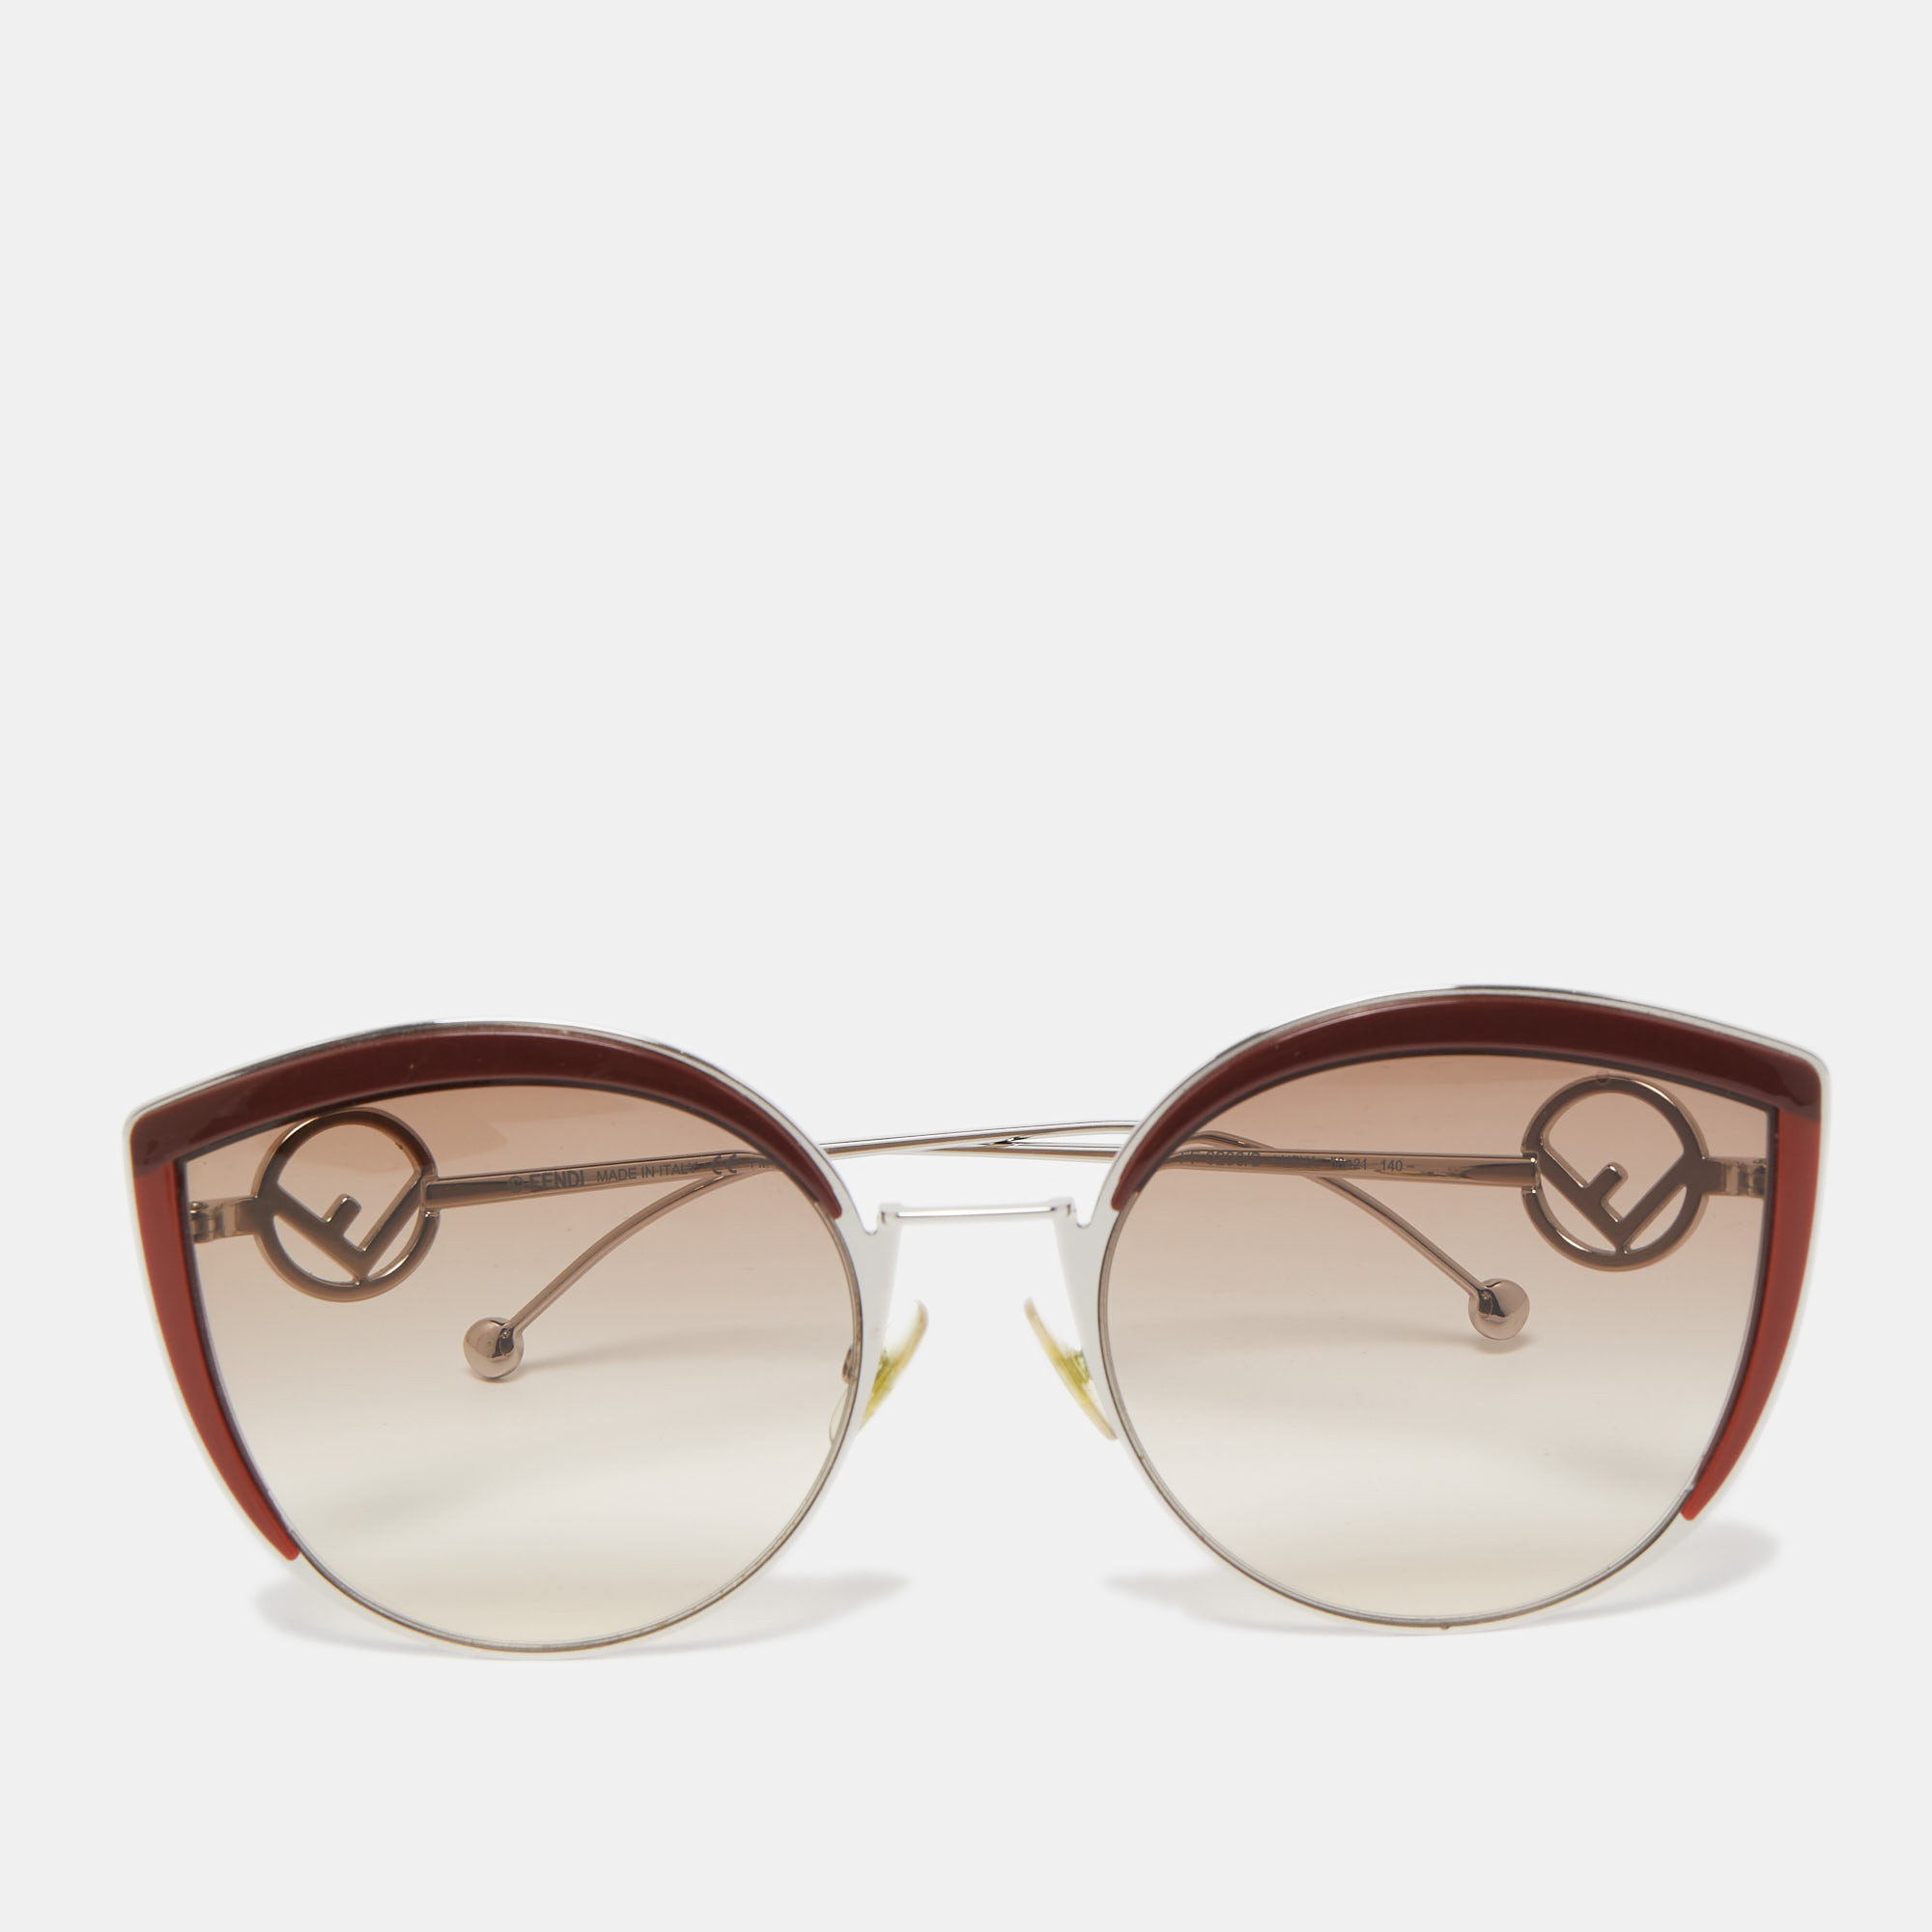 Fendi Sunglasses for Women, Model FS5357, Luxury Vintage